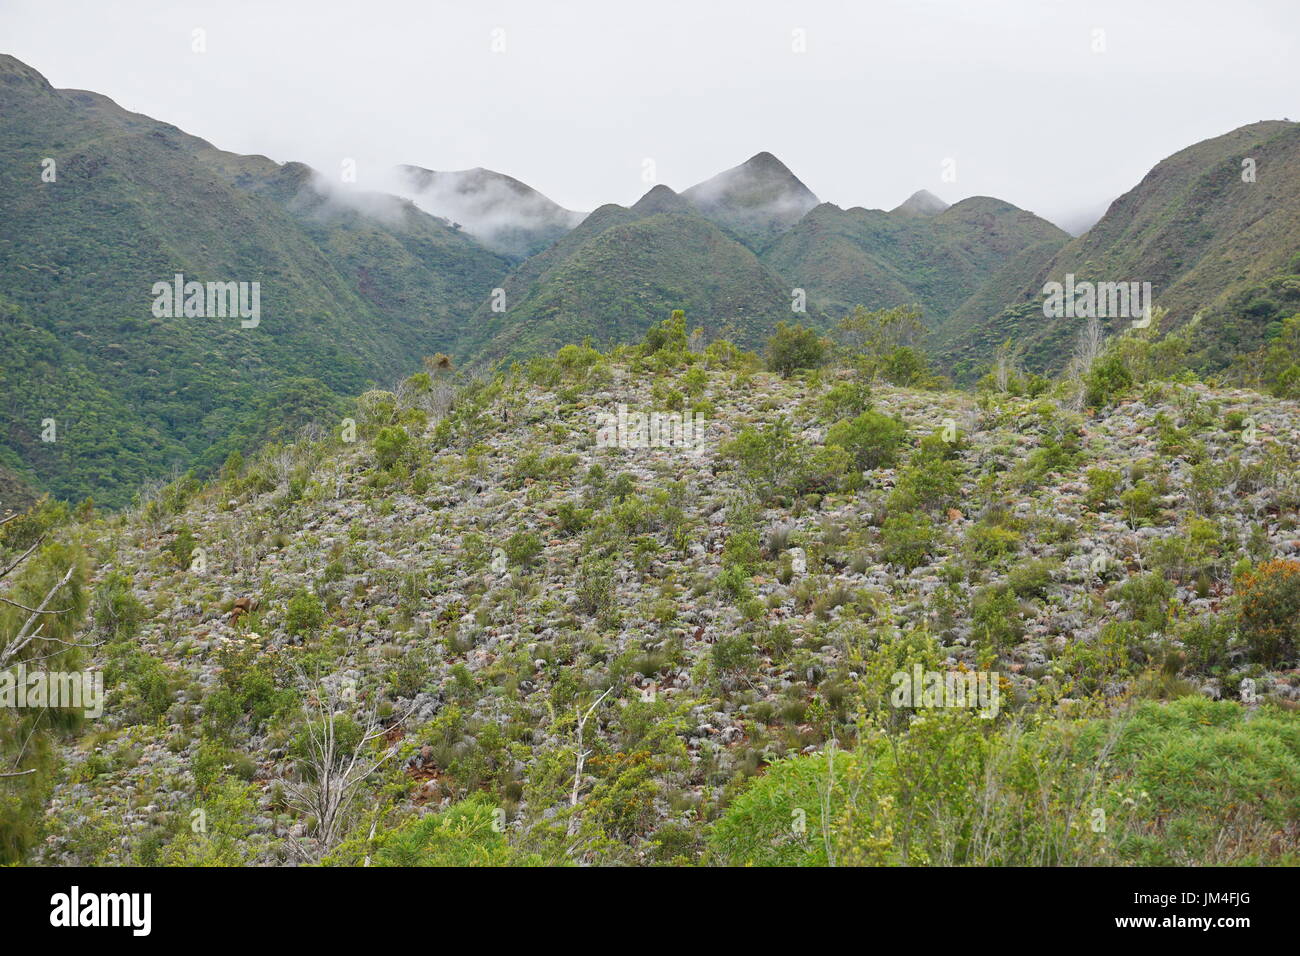 La végétation sur les pentes des montagnes, l'île de Grande-Terre, Dumbea, Nouvelle Calédonie, Océanie, Pacifique sud Banque D'Images